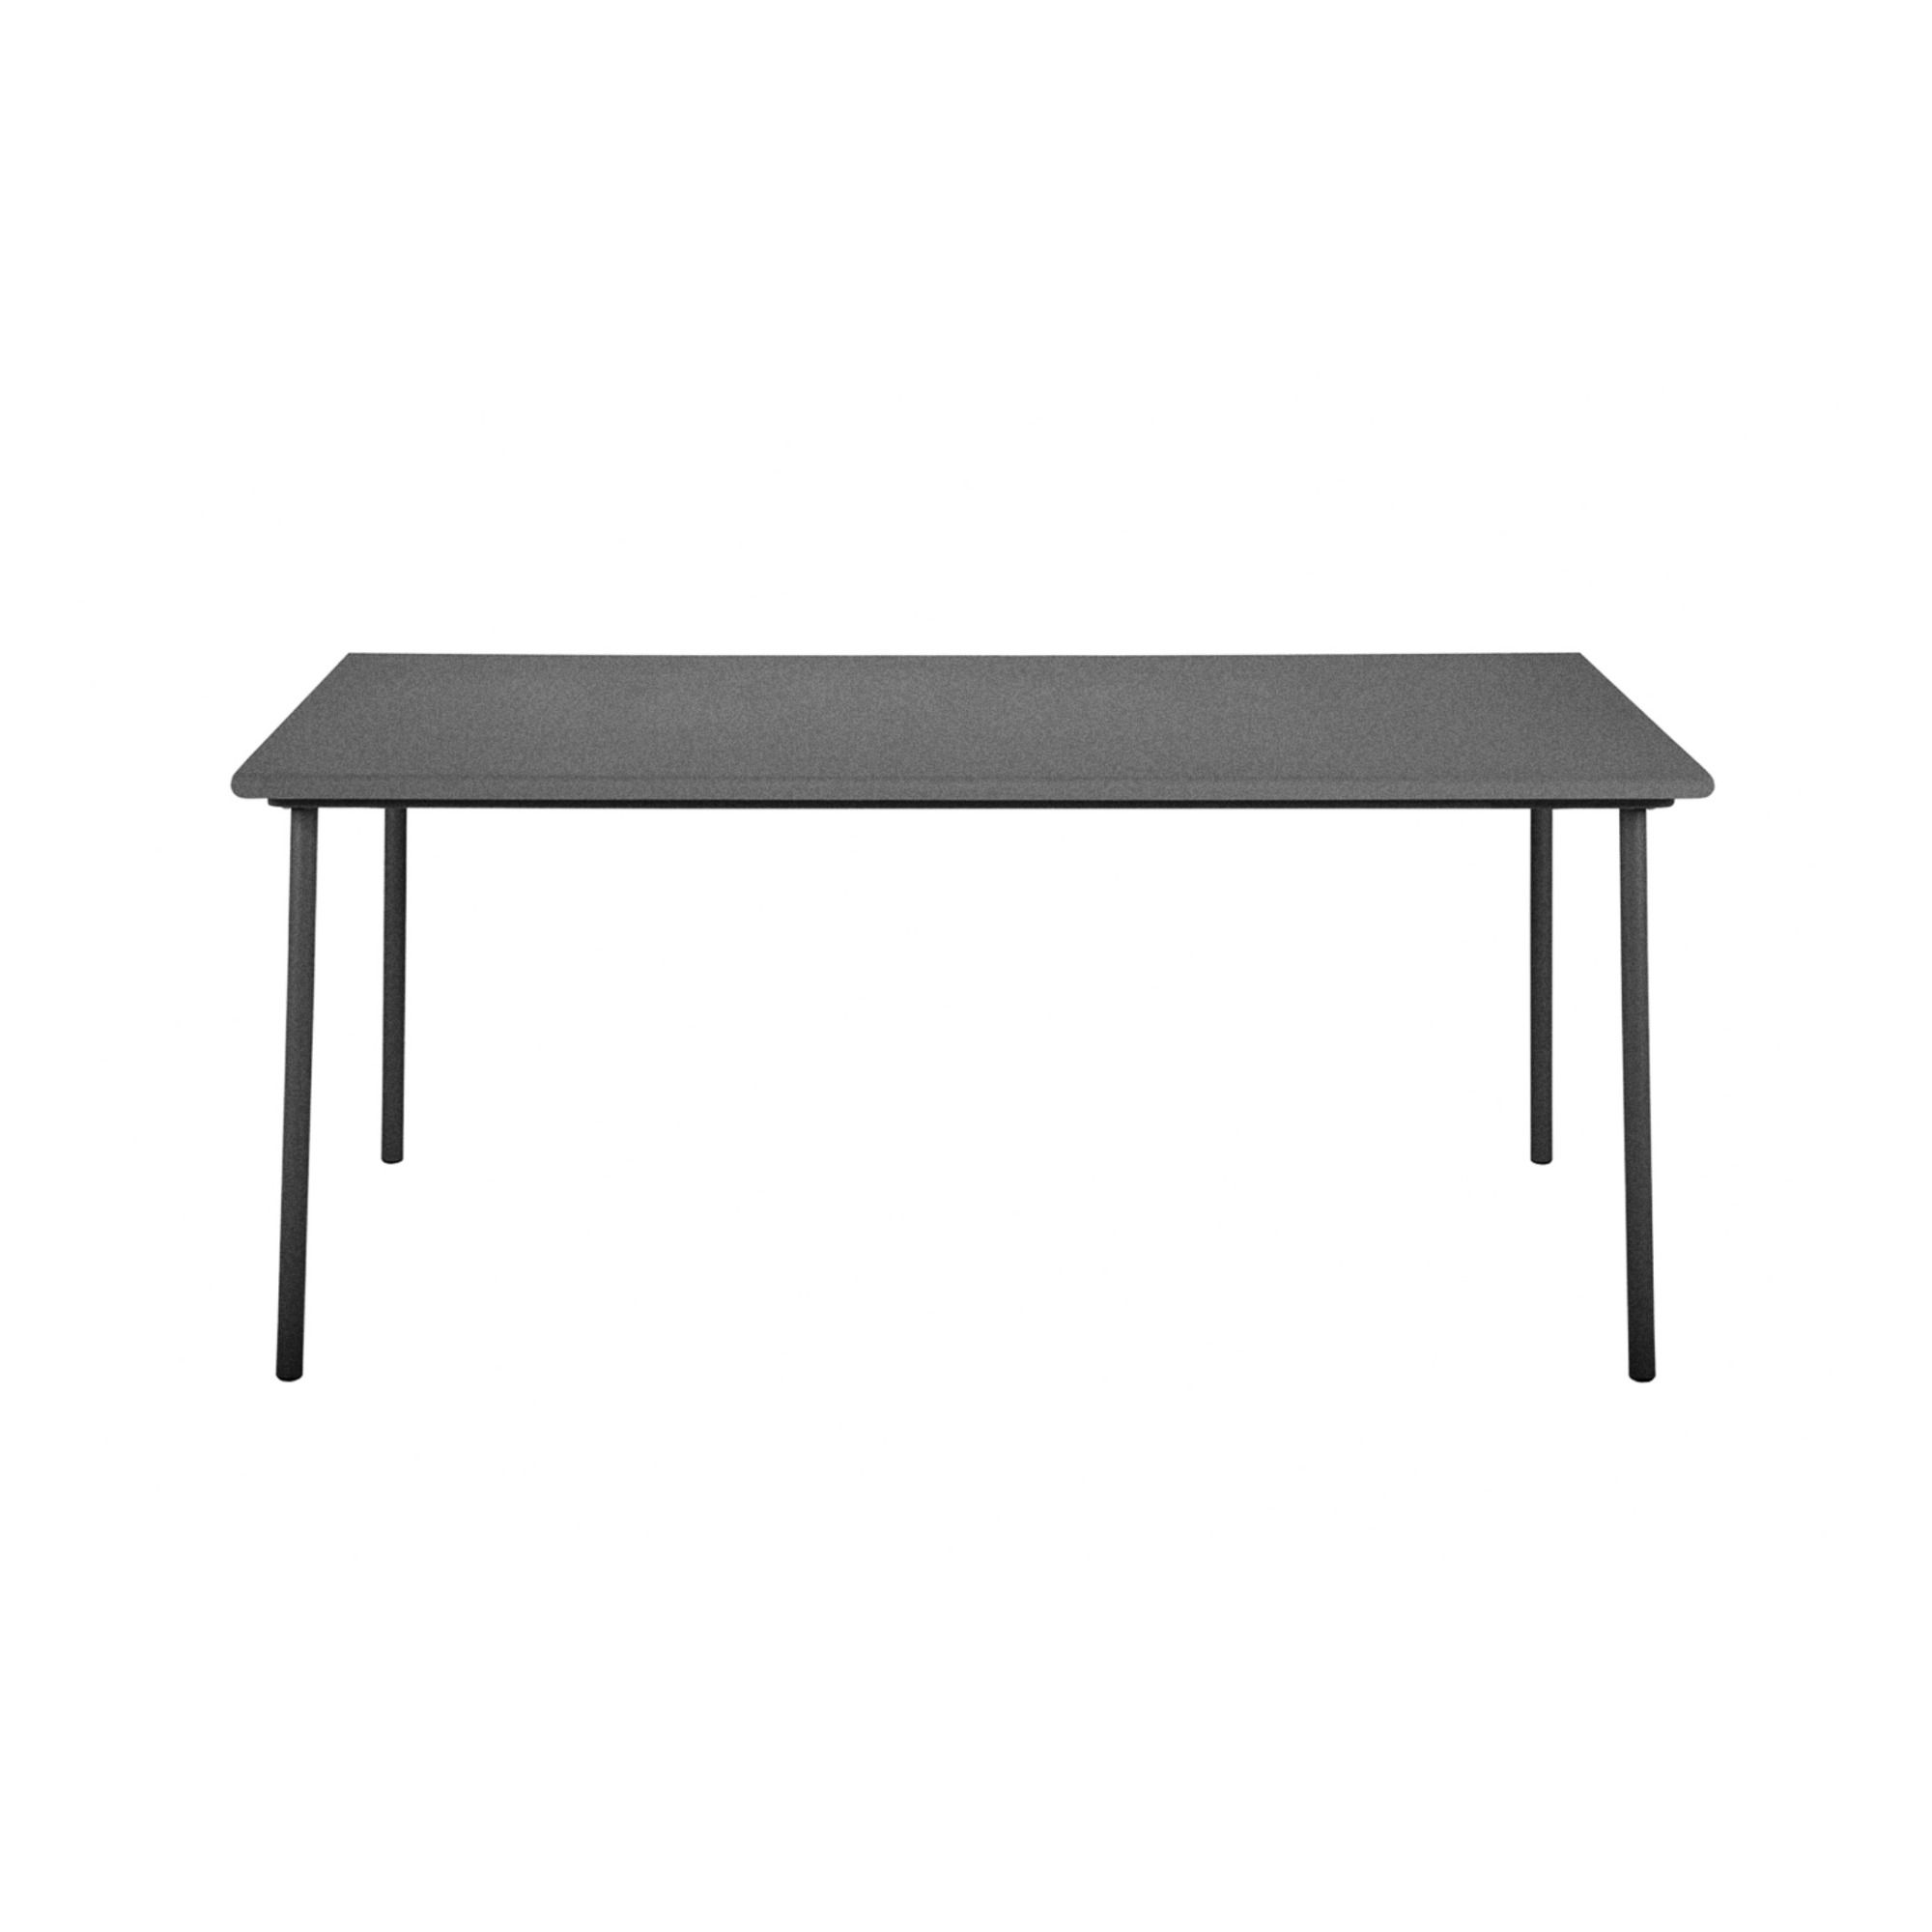 Tolix - Table outdoor Patio en inox - 200x100 cm - Gris graphite